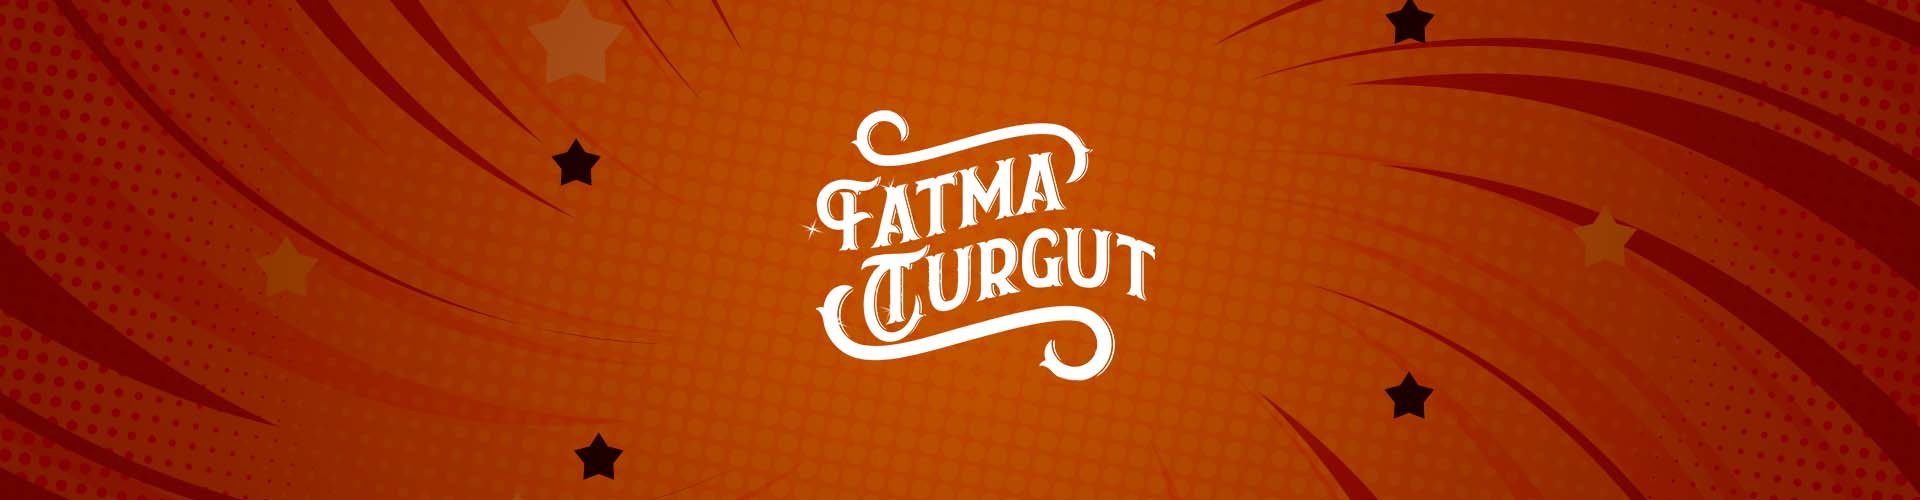 FatmaTurgut banner